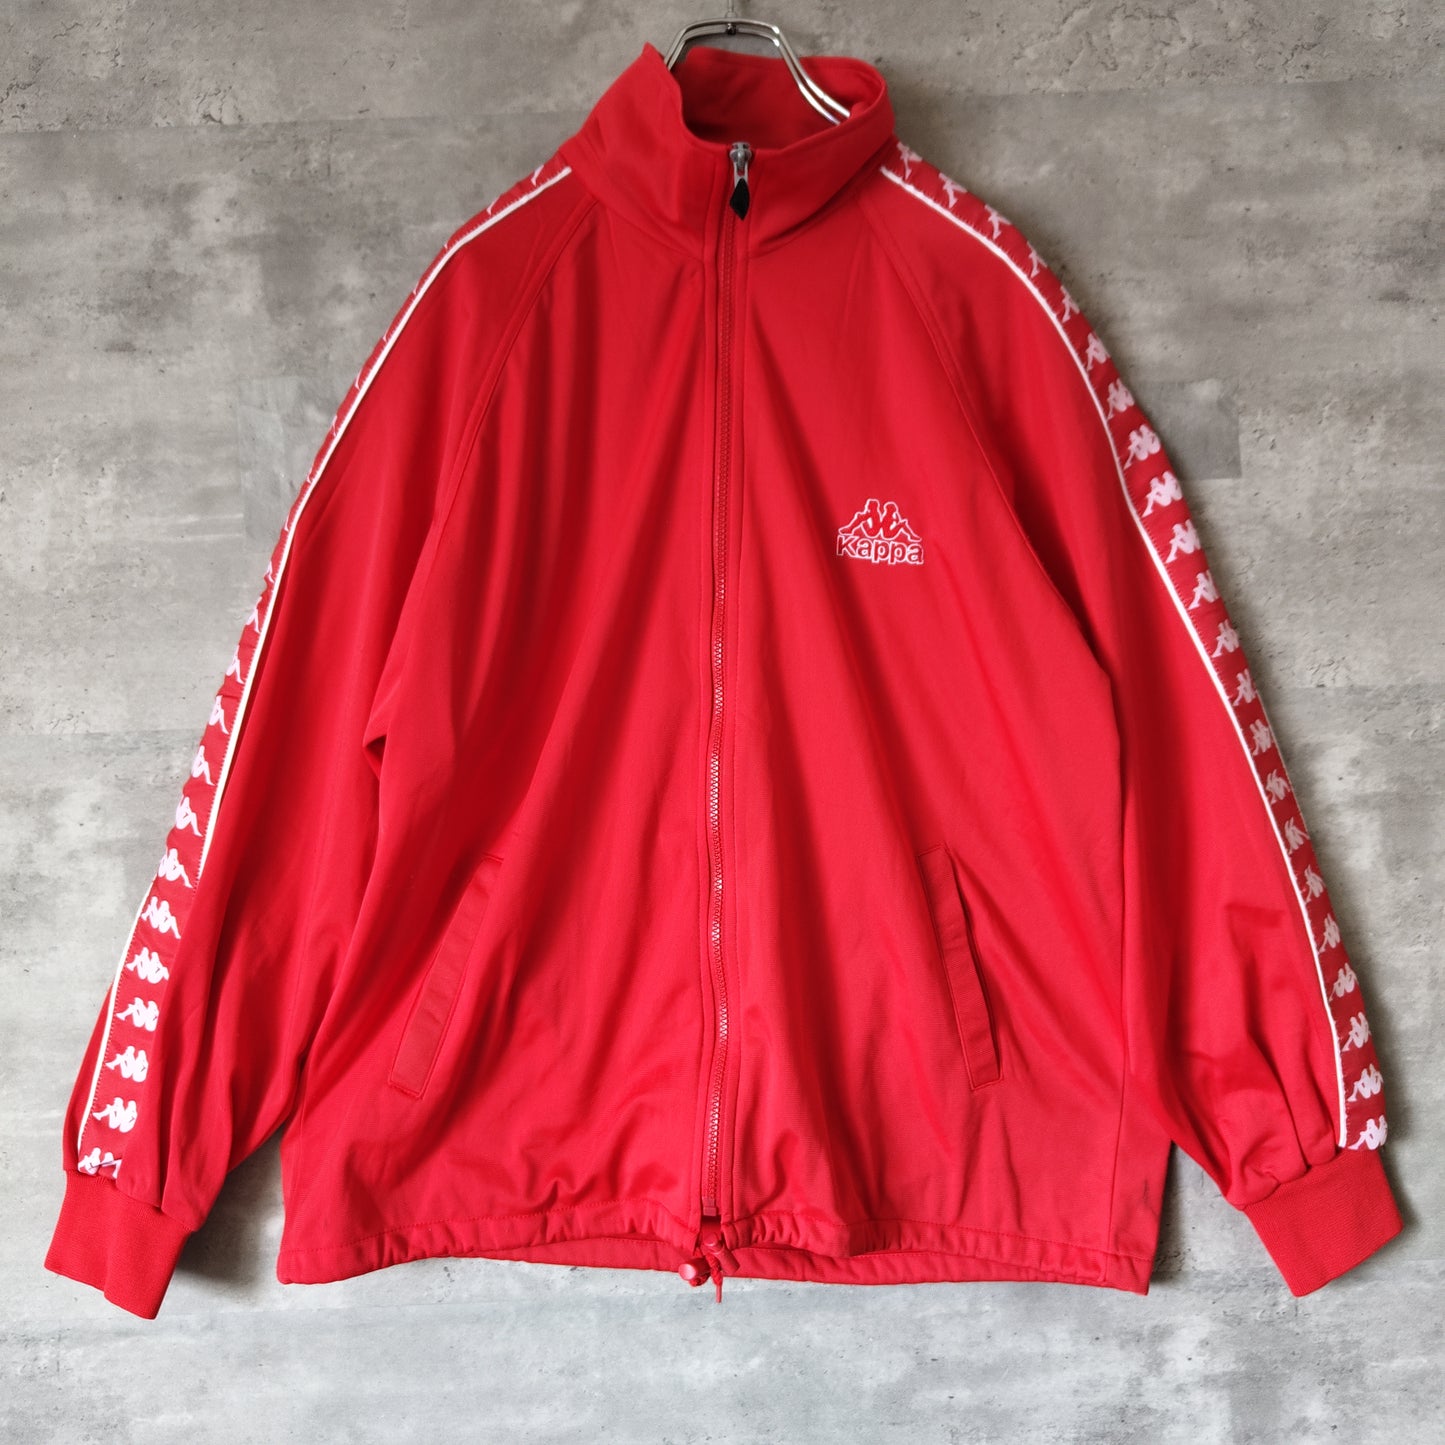 [Kappa] track jacket